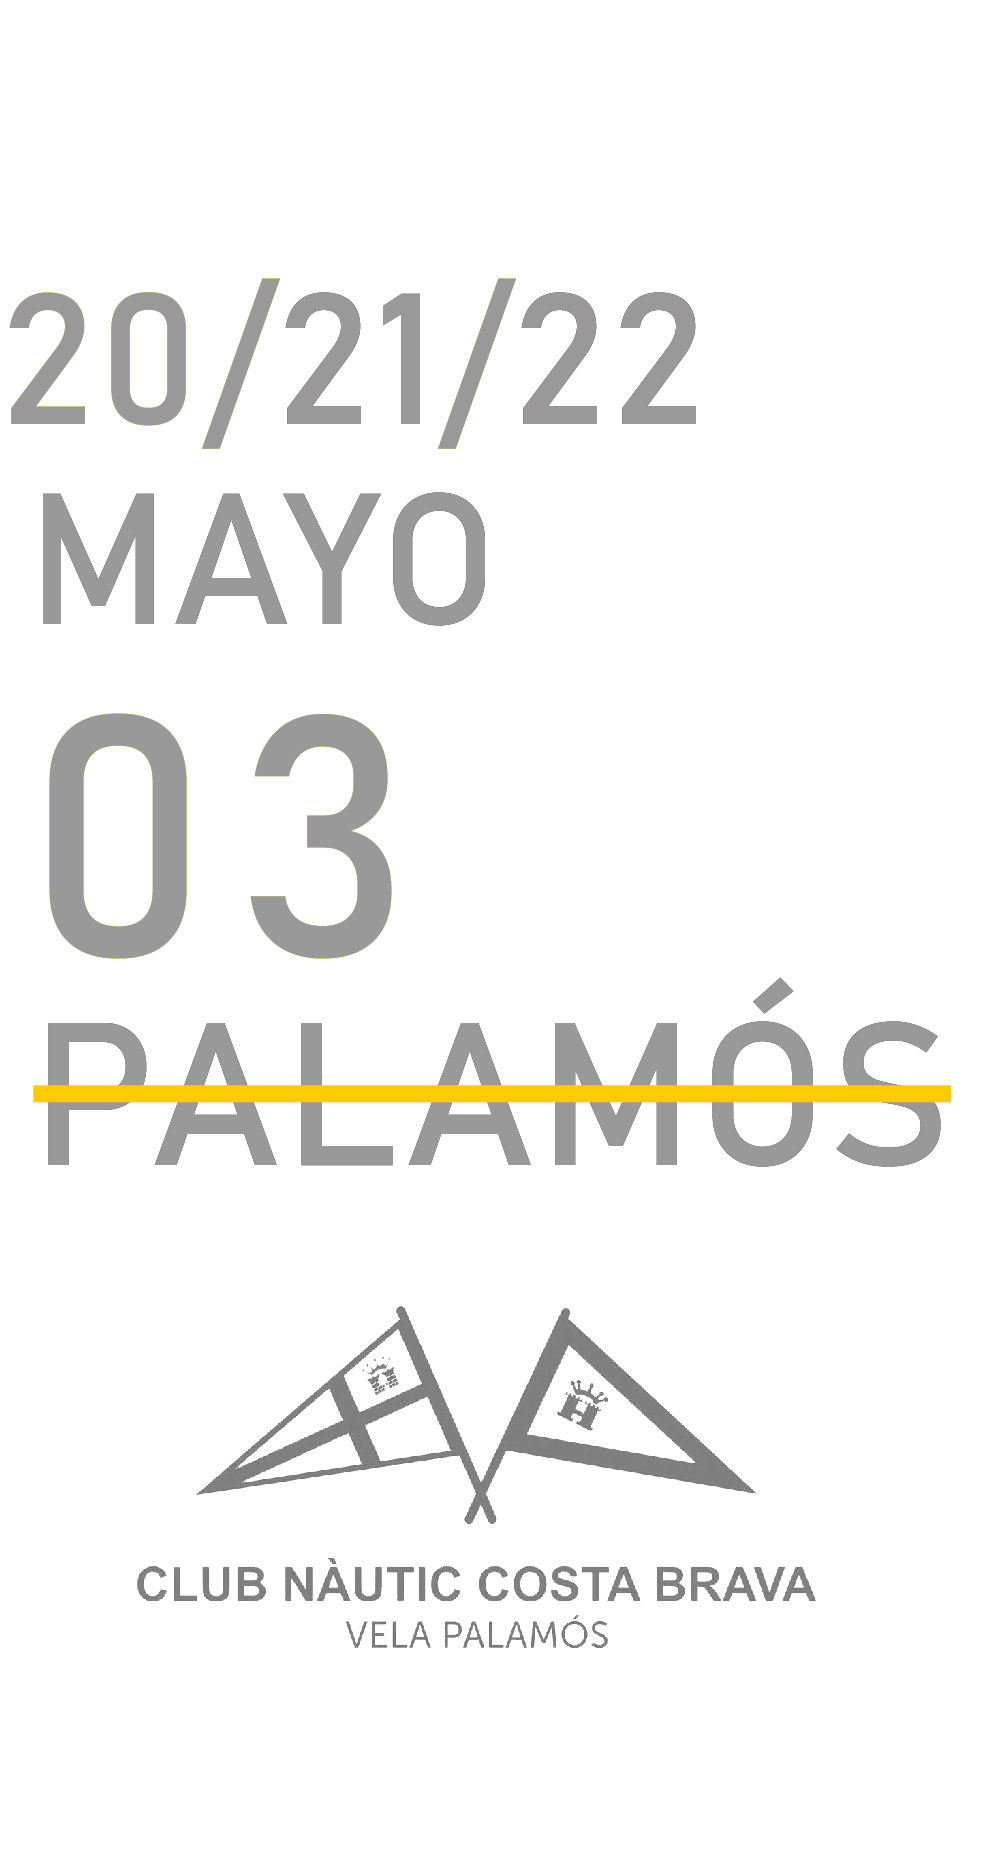 Calendario 3 - FKSS 2022 Palamos tachado